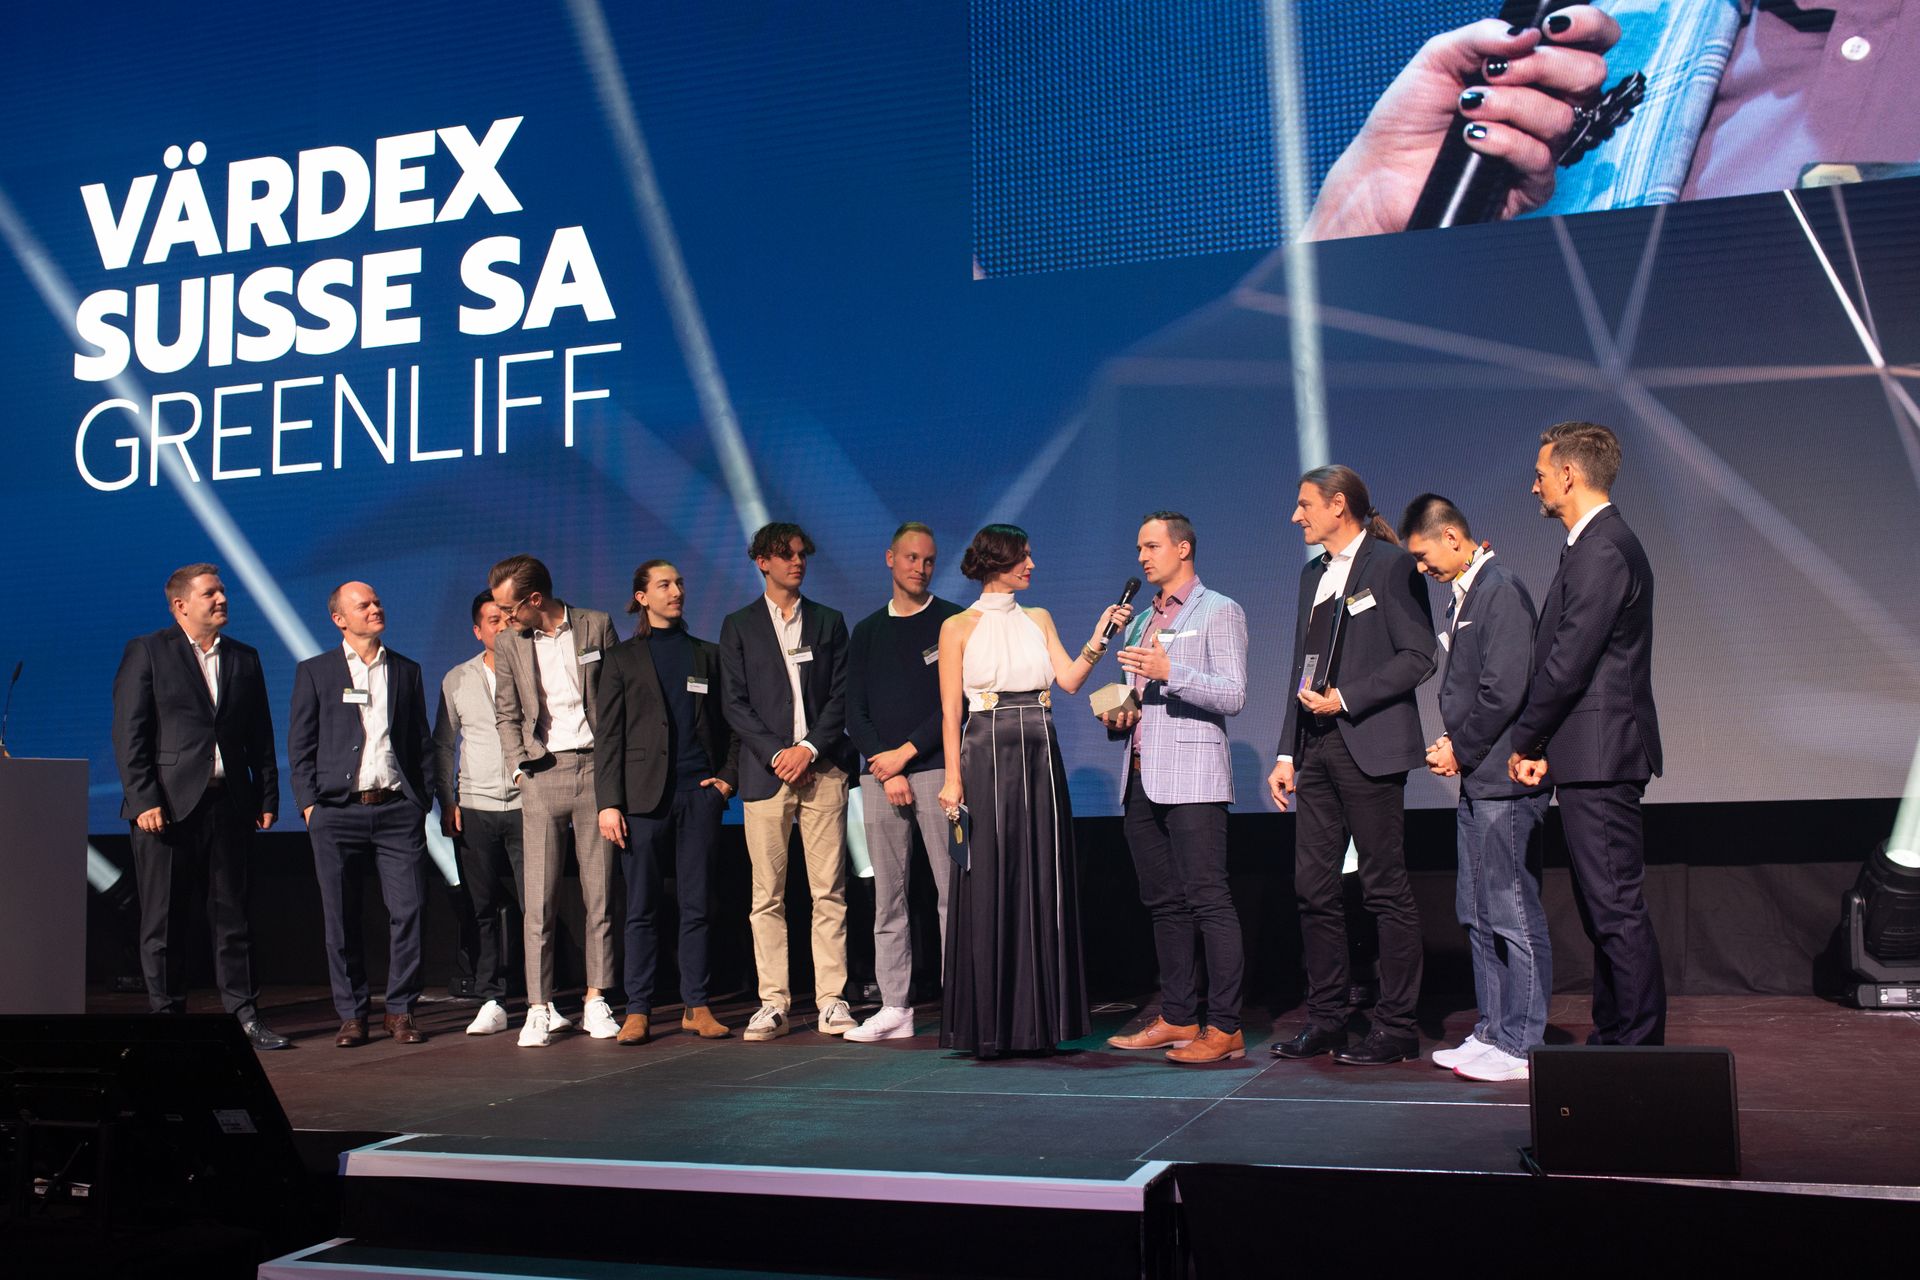 As empresas "Värdex Suisse" e "Greenliff" receberam os dois melhores prêmios "Highest Quality" no "Digital Economy Awards" da Suíça